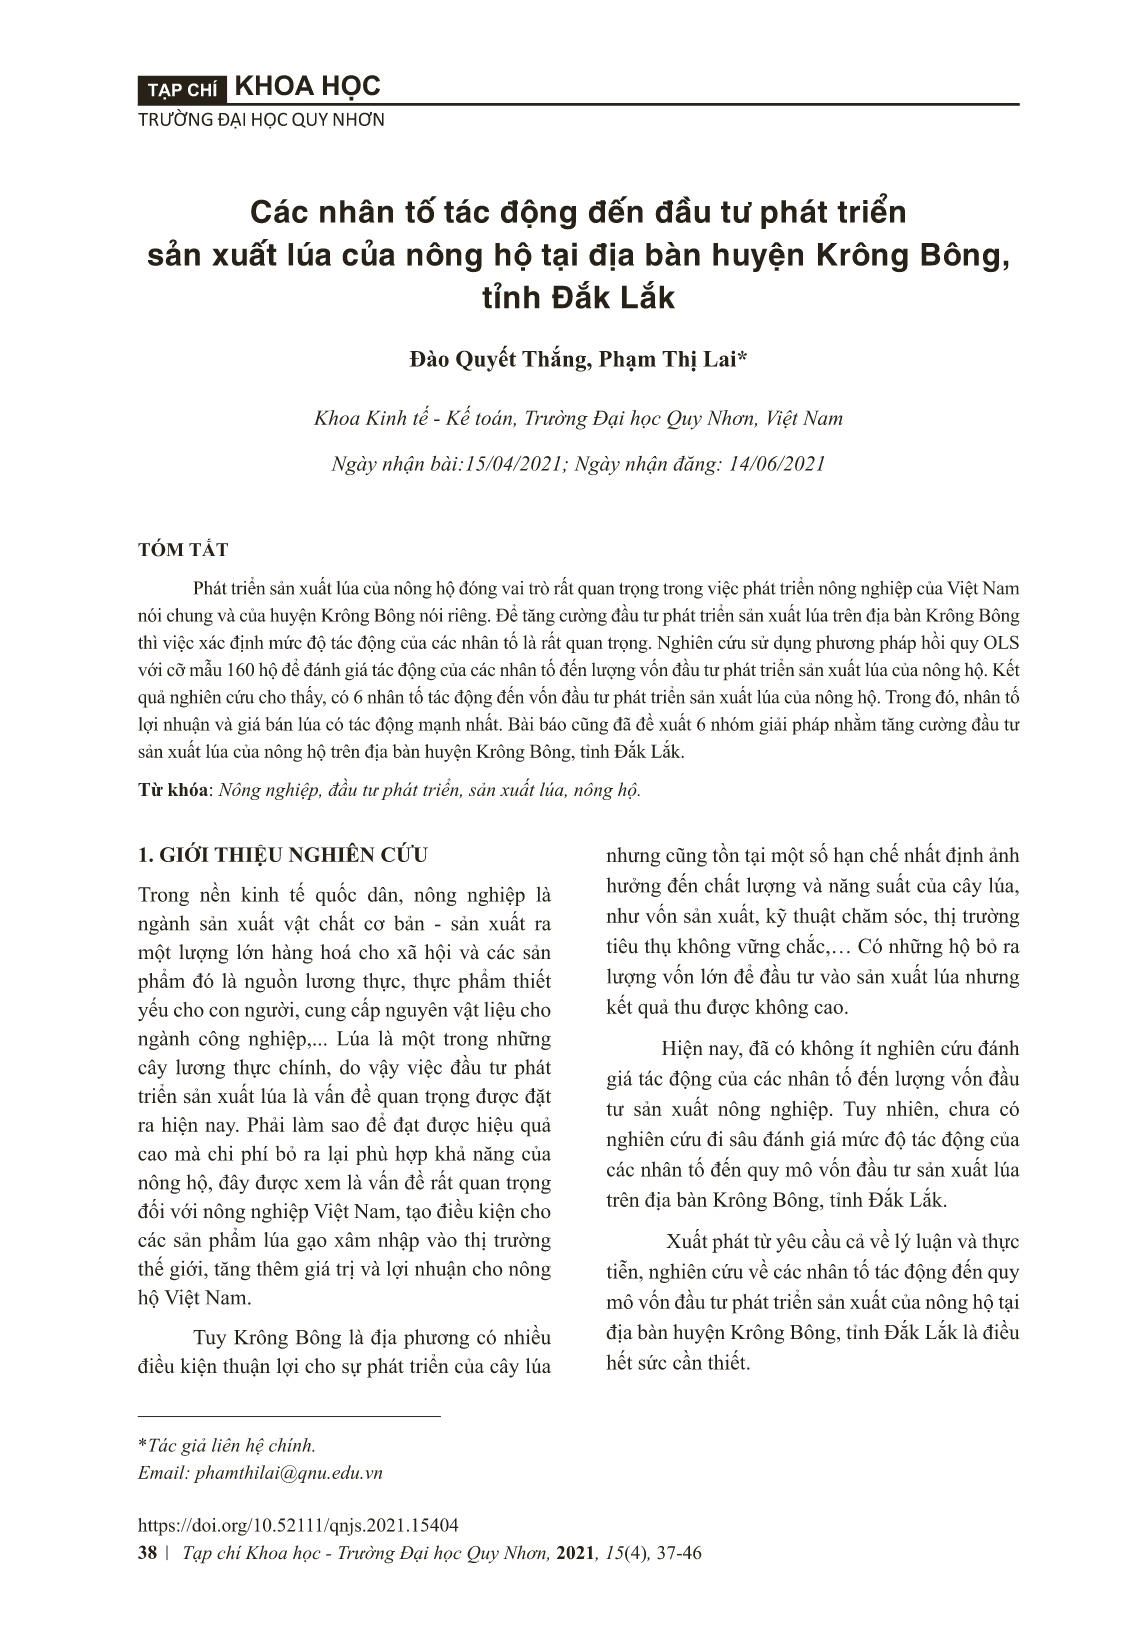 Các nhân tố tác động đến đầu tư phát triển sản xuất lúa của nông hộ tại địa bàn huyện Krông Bông, tỉnh Đă﻿́k Lă﻿́k trang 2